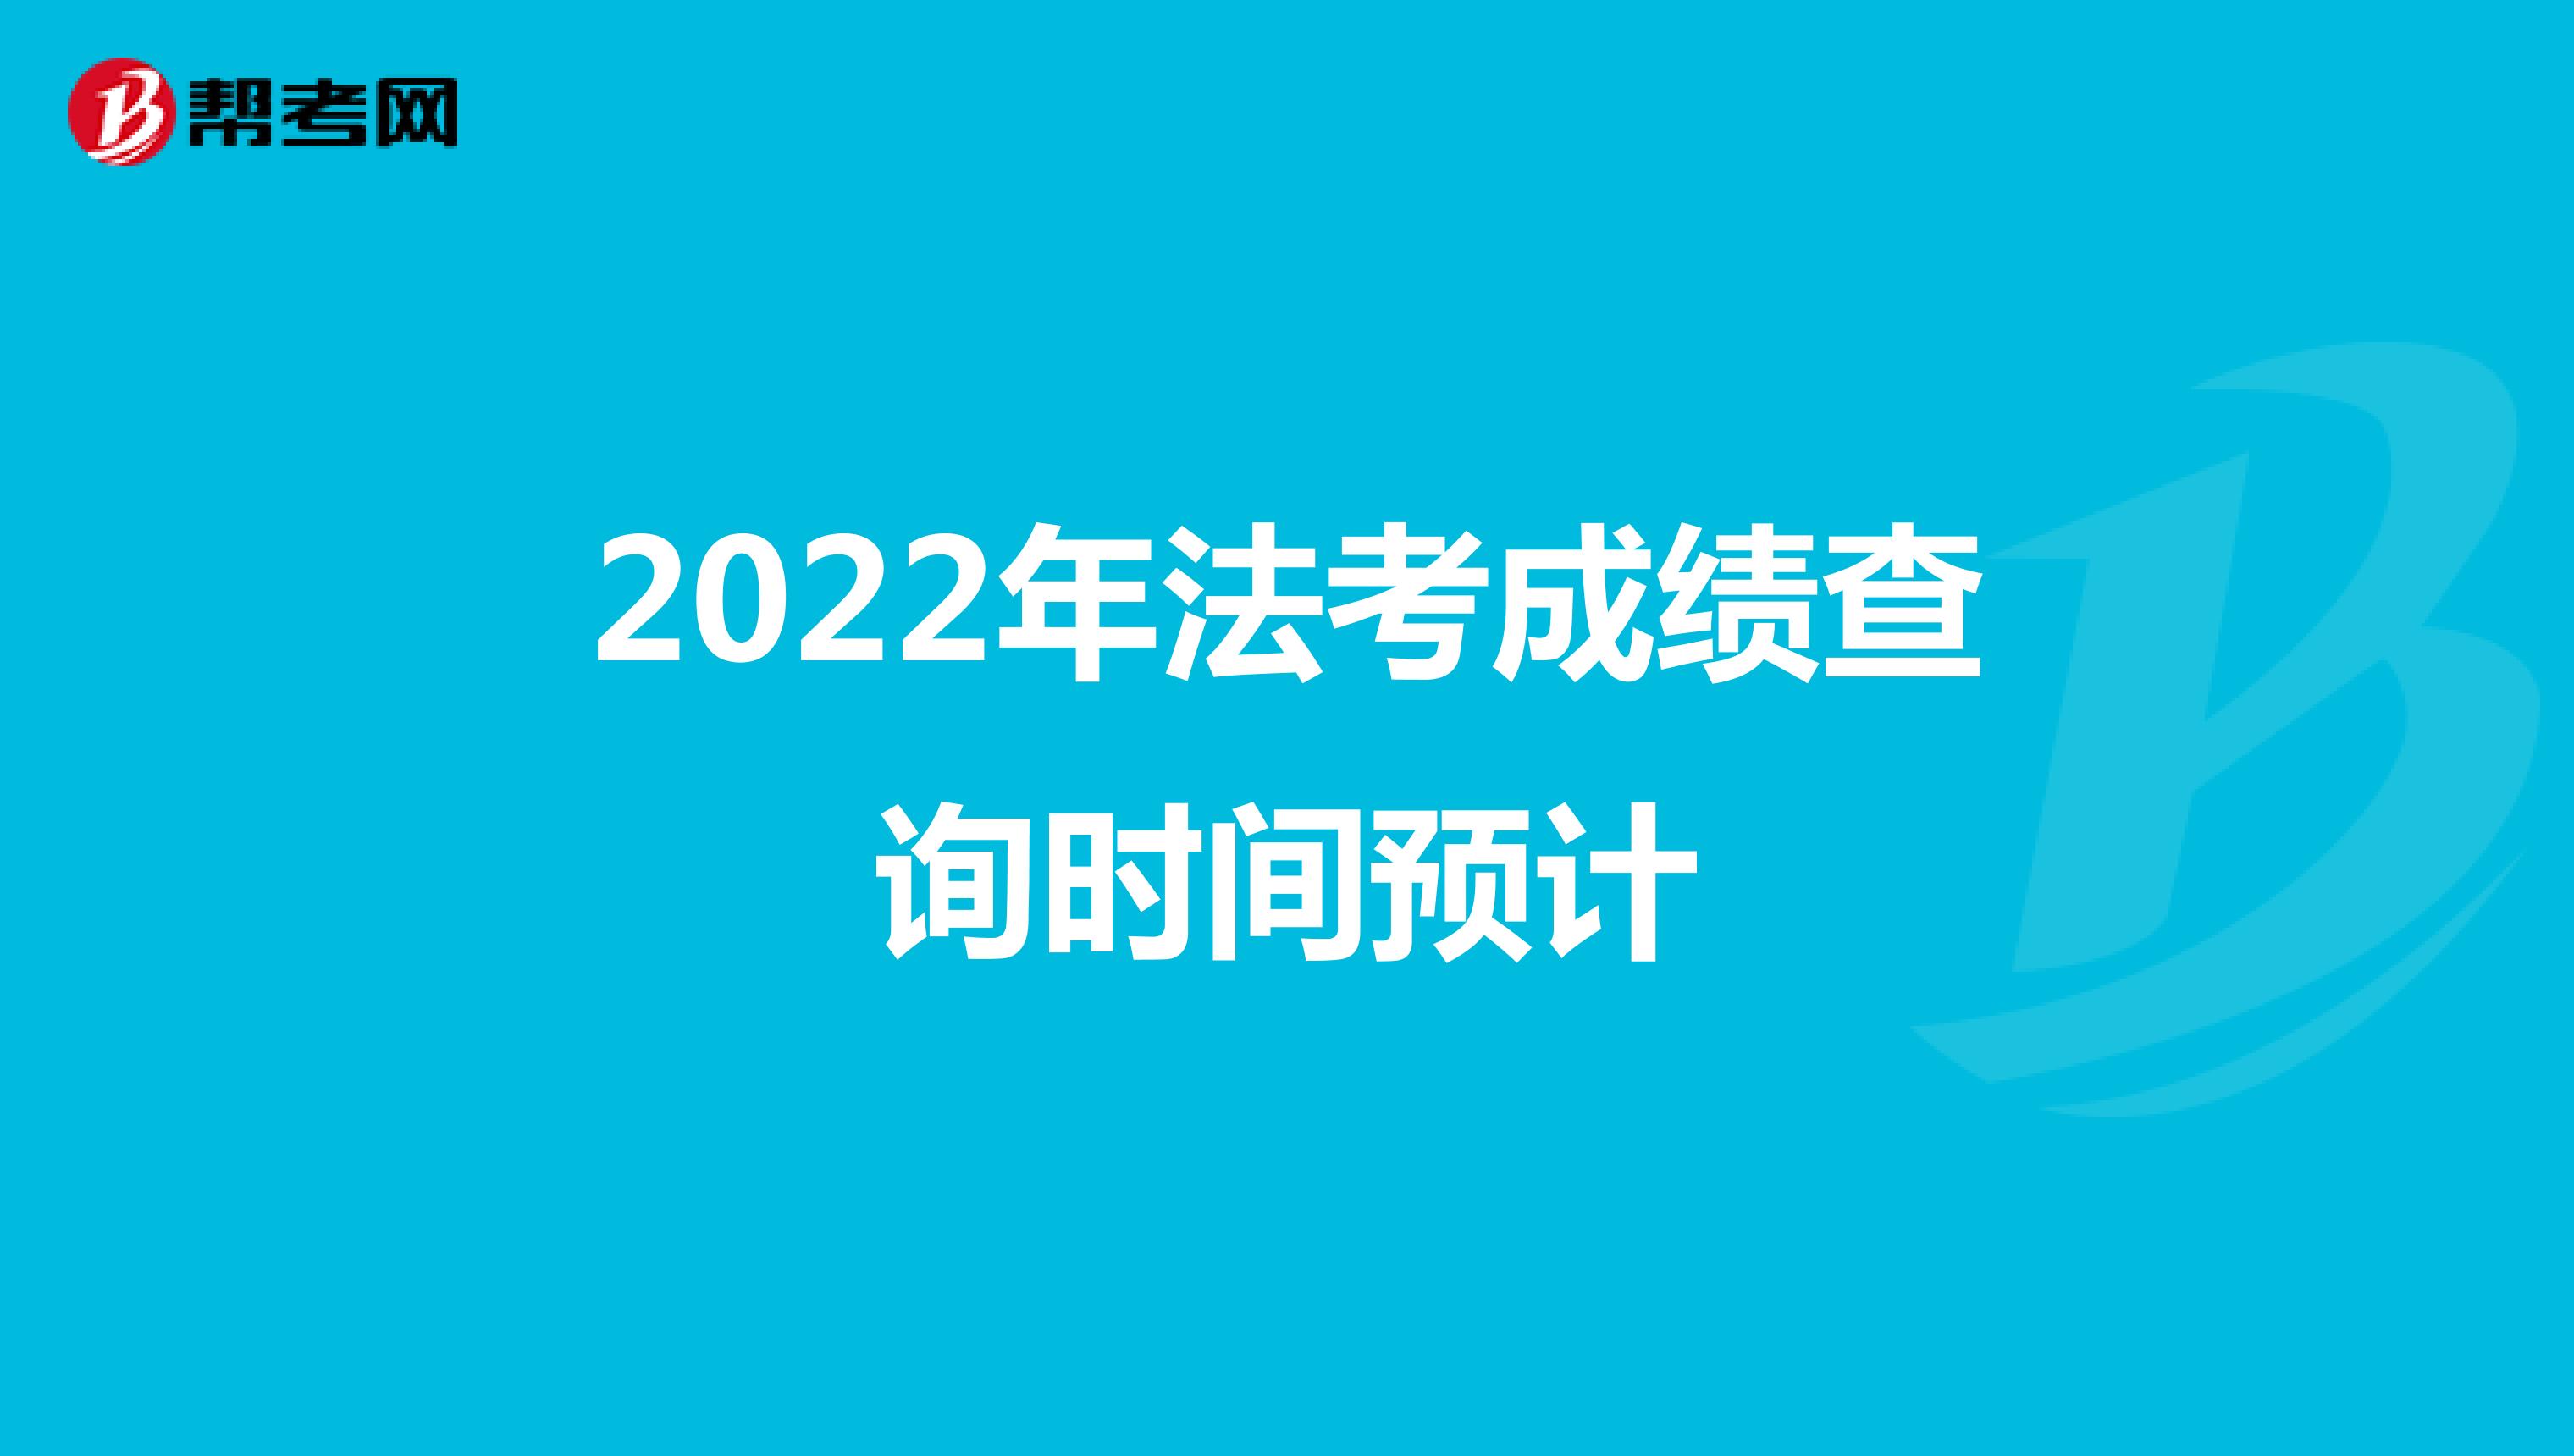 2022年法考成績查詢時間預計